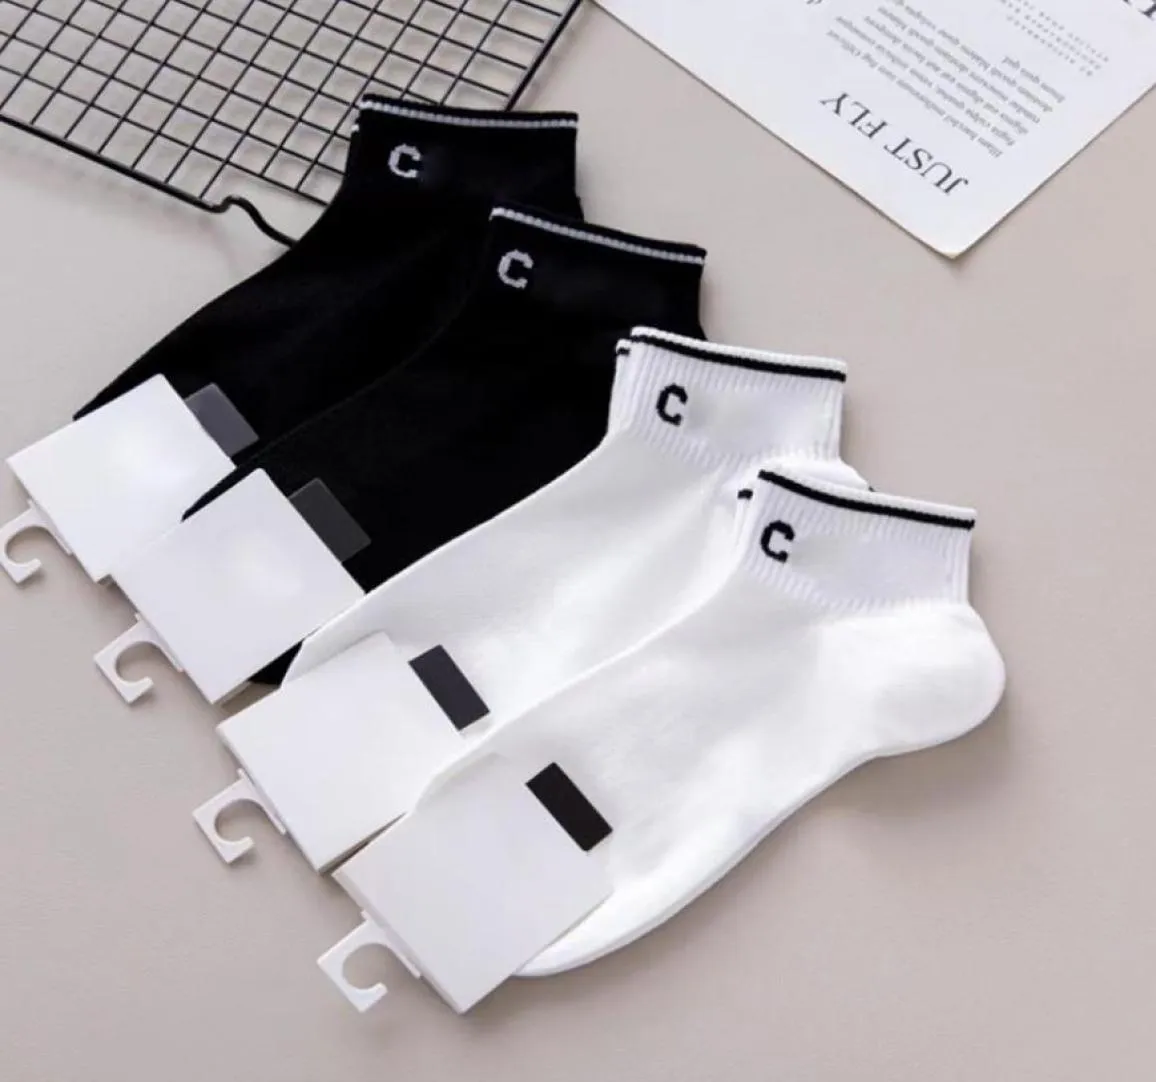 2 stilar bokstav bomullsstrumpor med tagg svart vit casual sport ankel sock mode strumpor hela hög kvalitet2582622